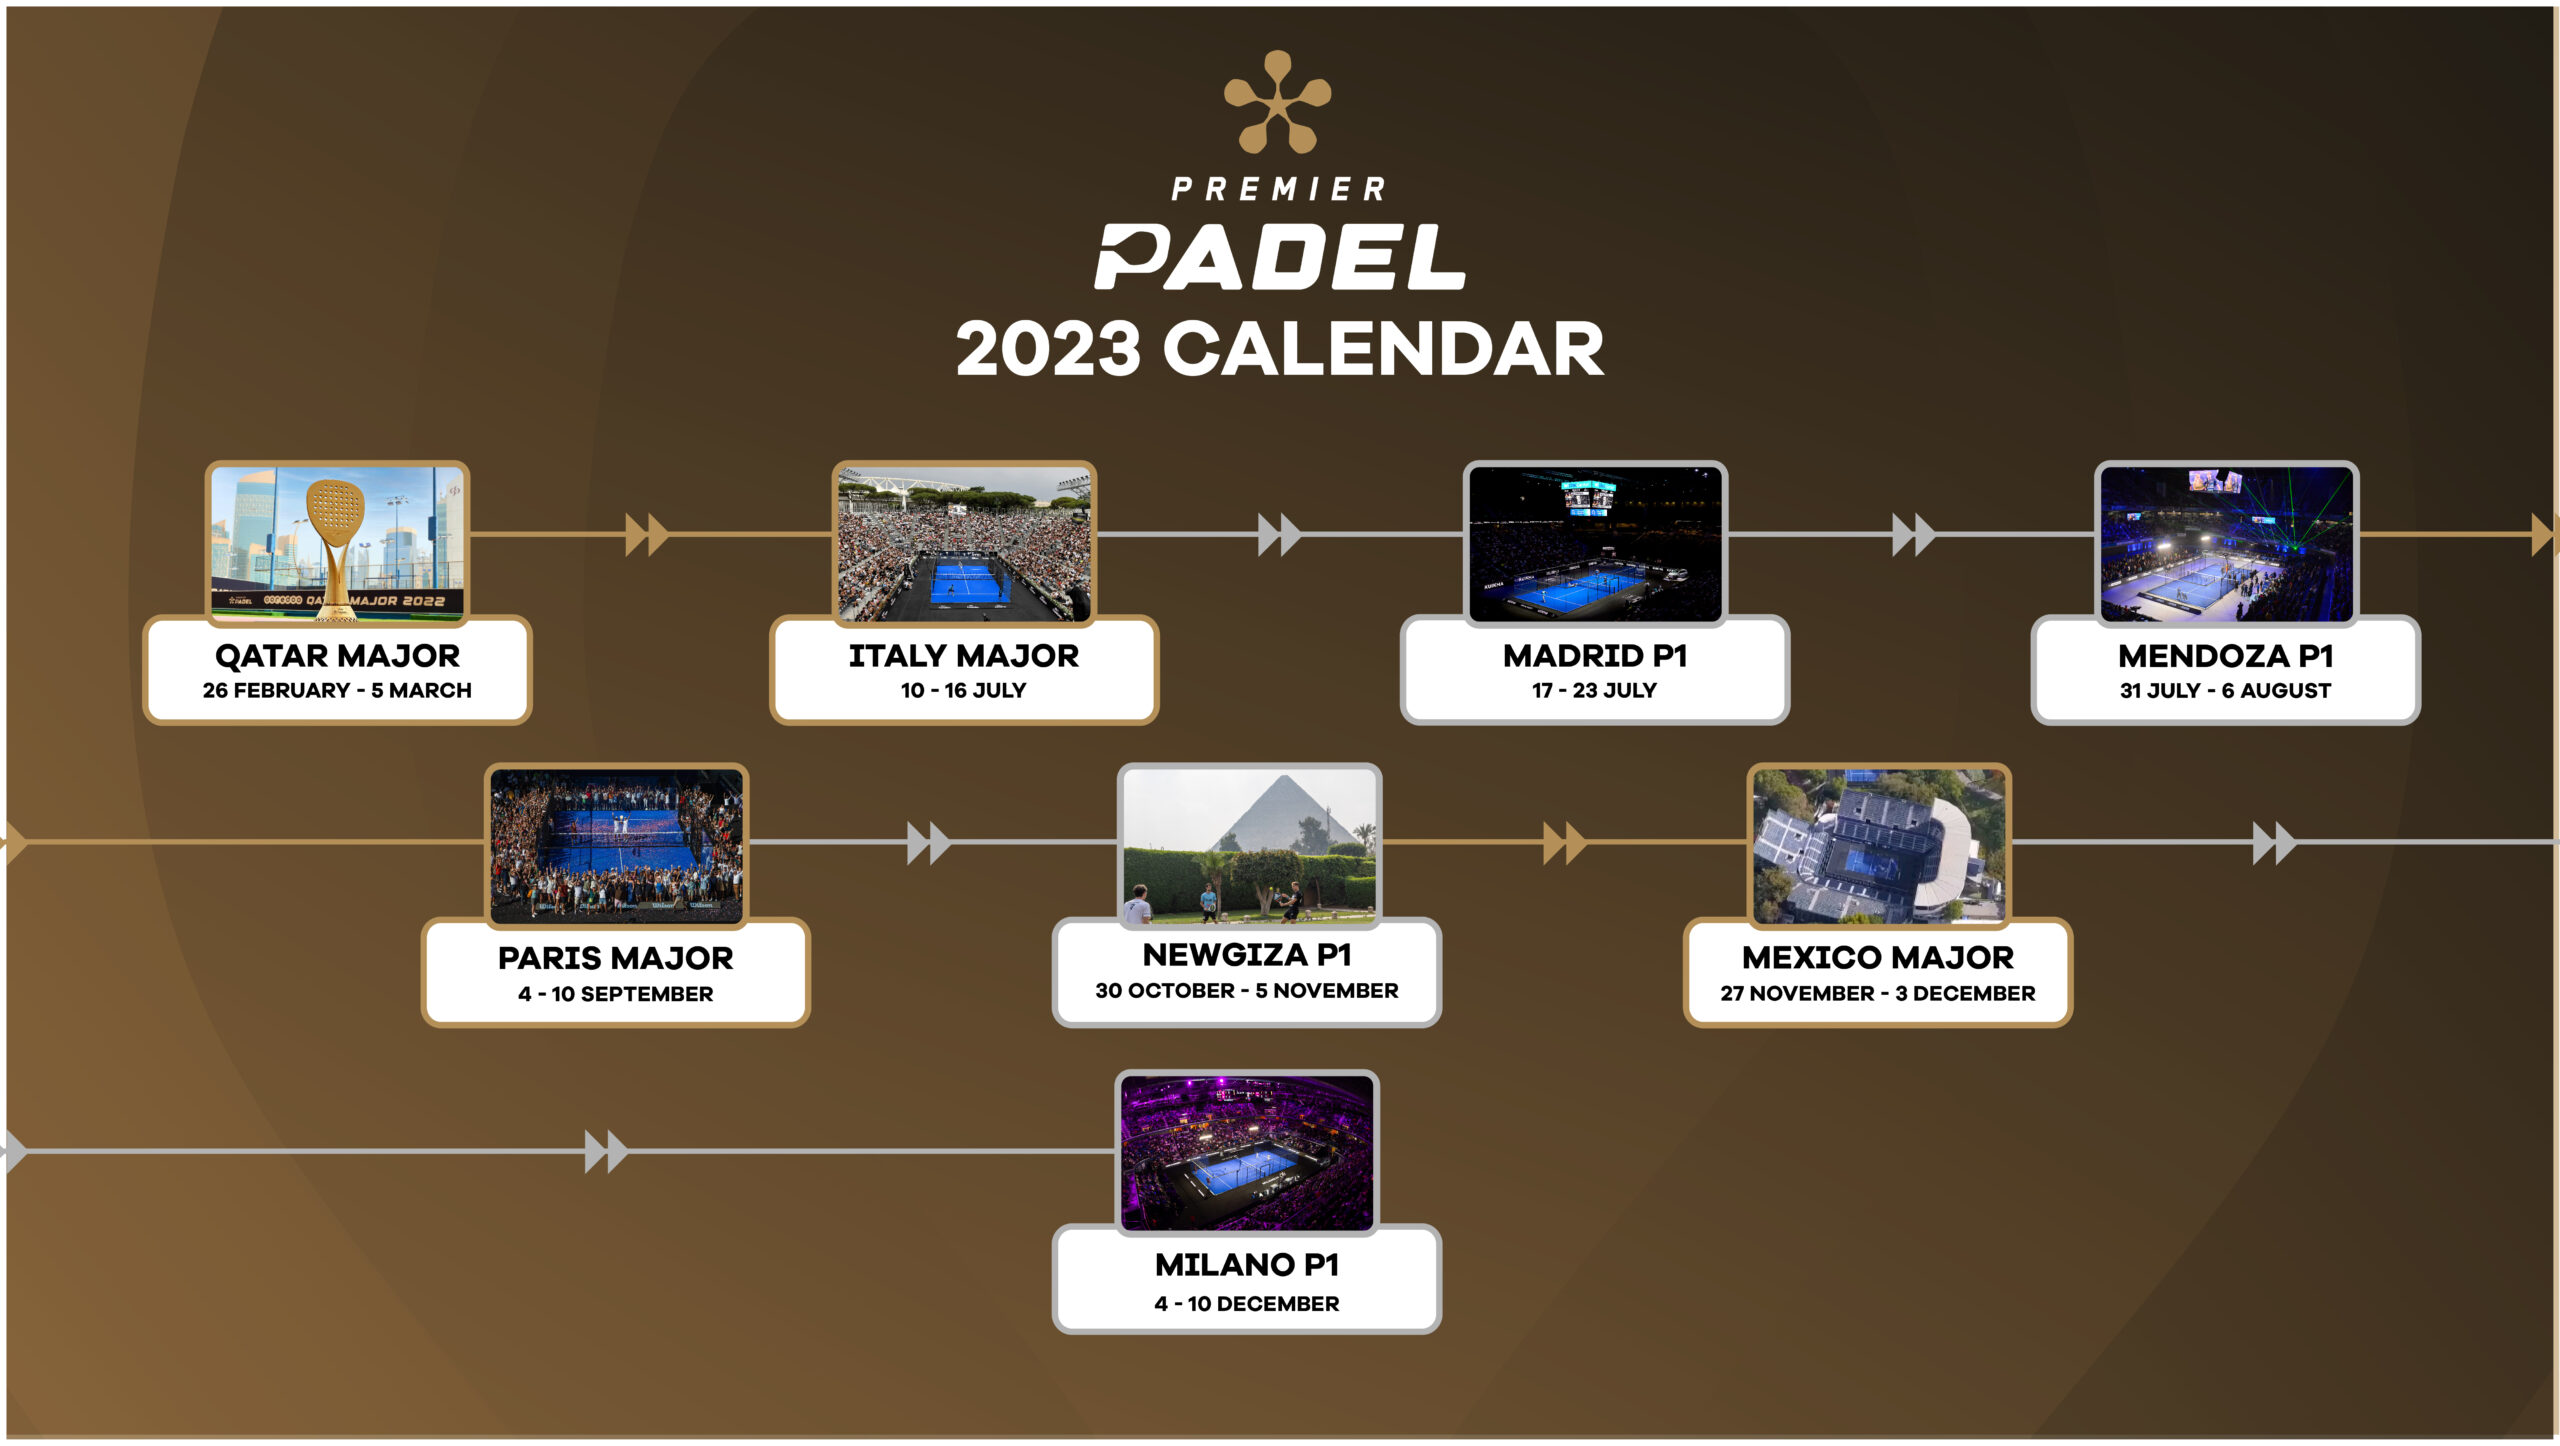 Premier Padel présente son calendrier 2023 !